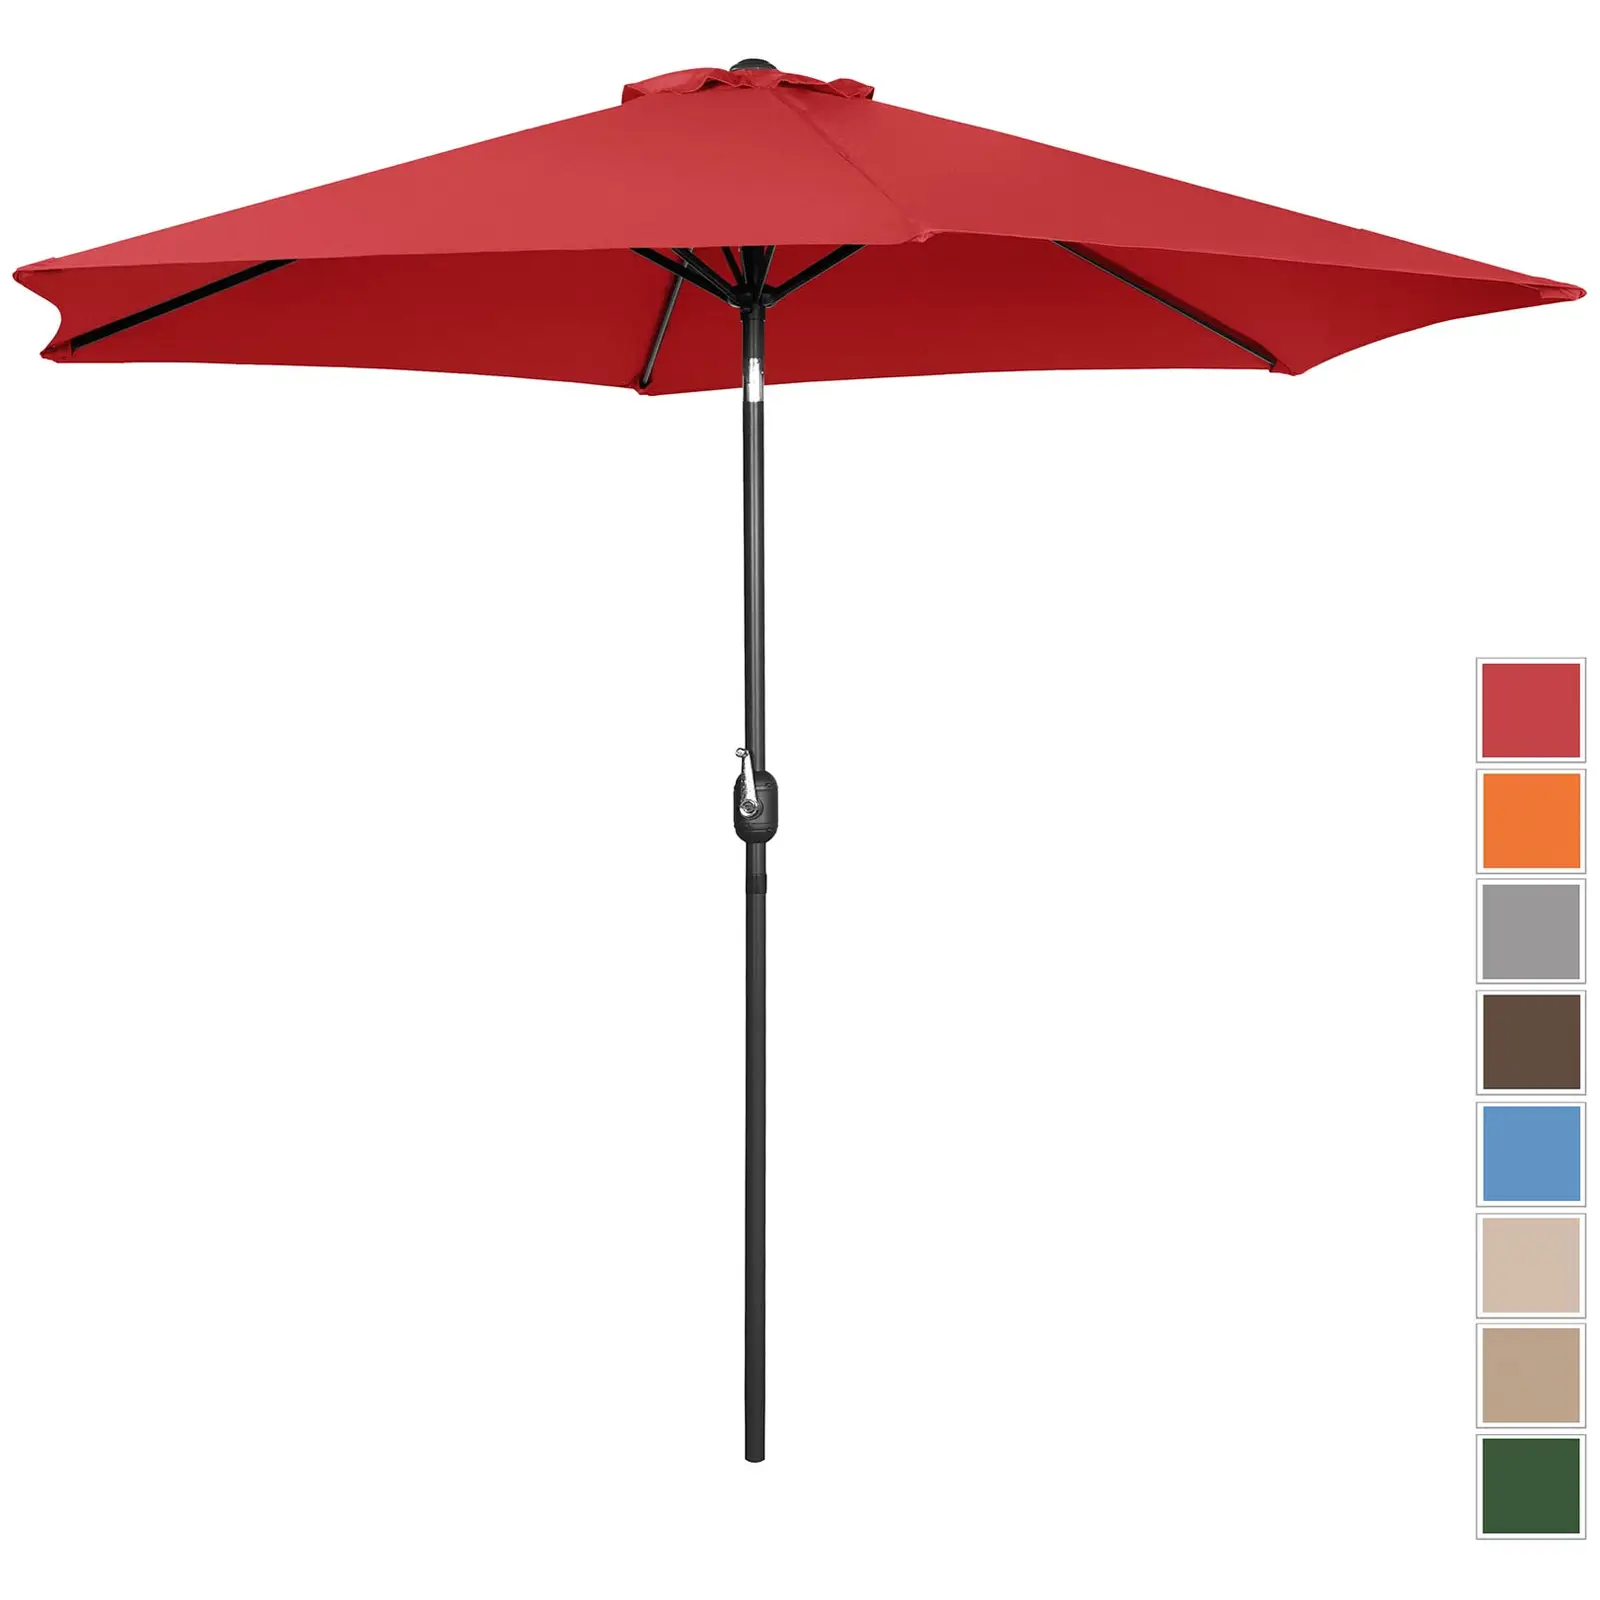 Μεγάλη ομπρέλα εξωτερικού χώρου - κόκκινη - εξαγωνική - Ø 270 cm - ανακλινόμενη